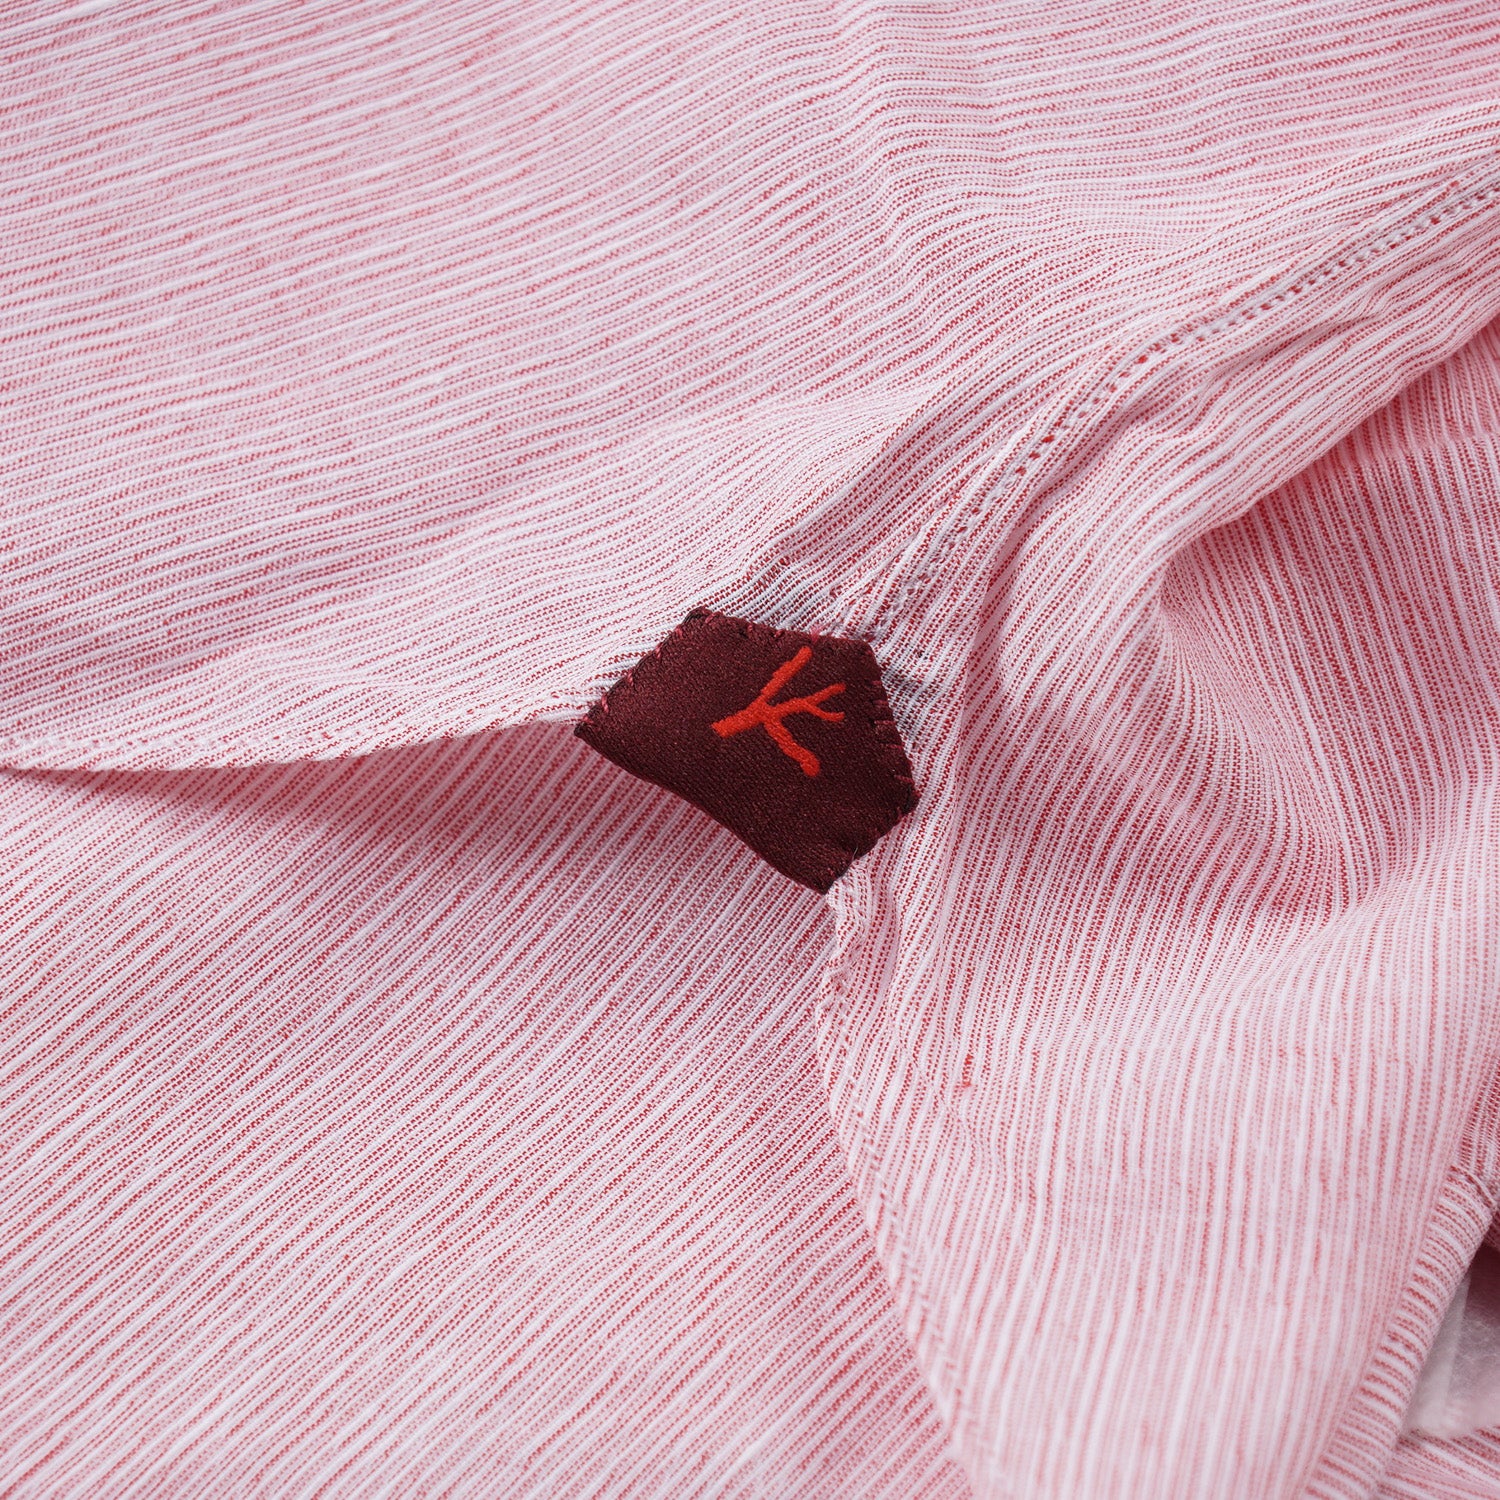 Isaia Lightweight Cotton and Linen Shirt - Top Shelf Apparel